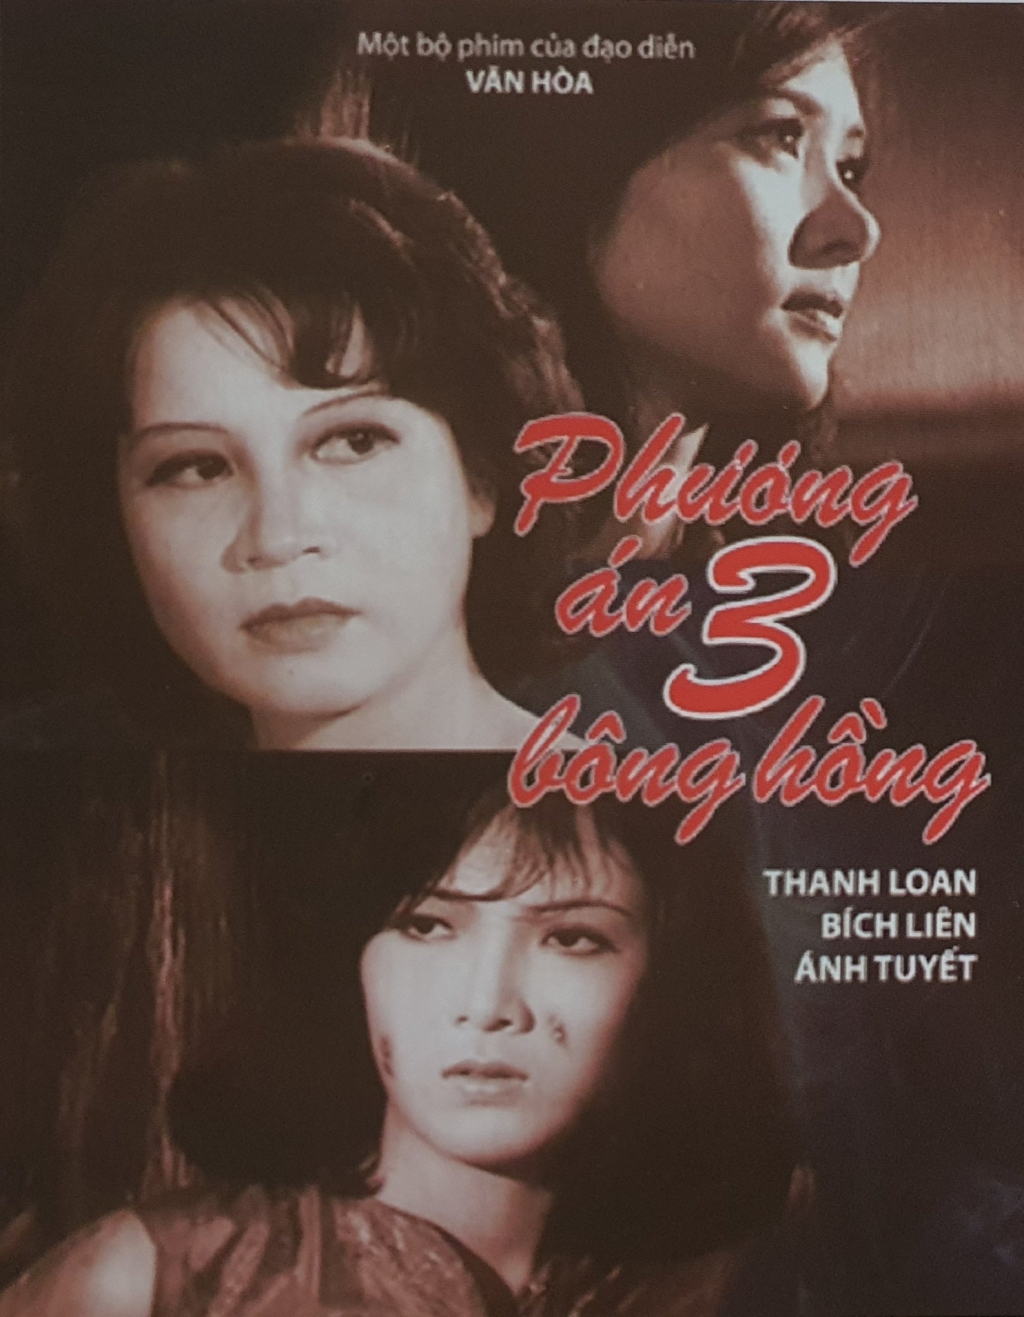 Phương án ba bông hồng là bộ phim lấy bối cảnh thành phố Nha Trang